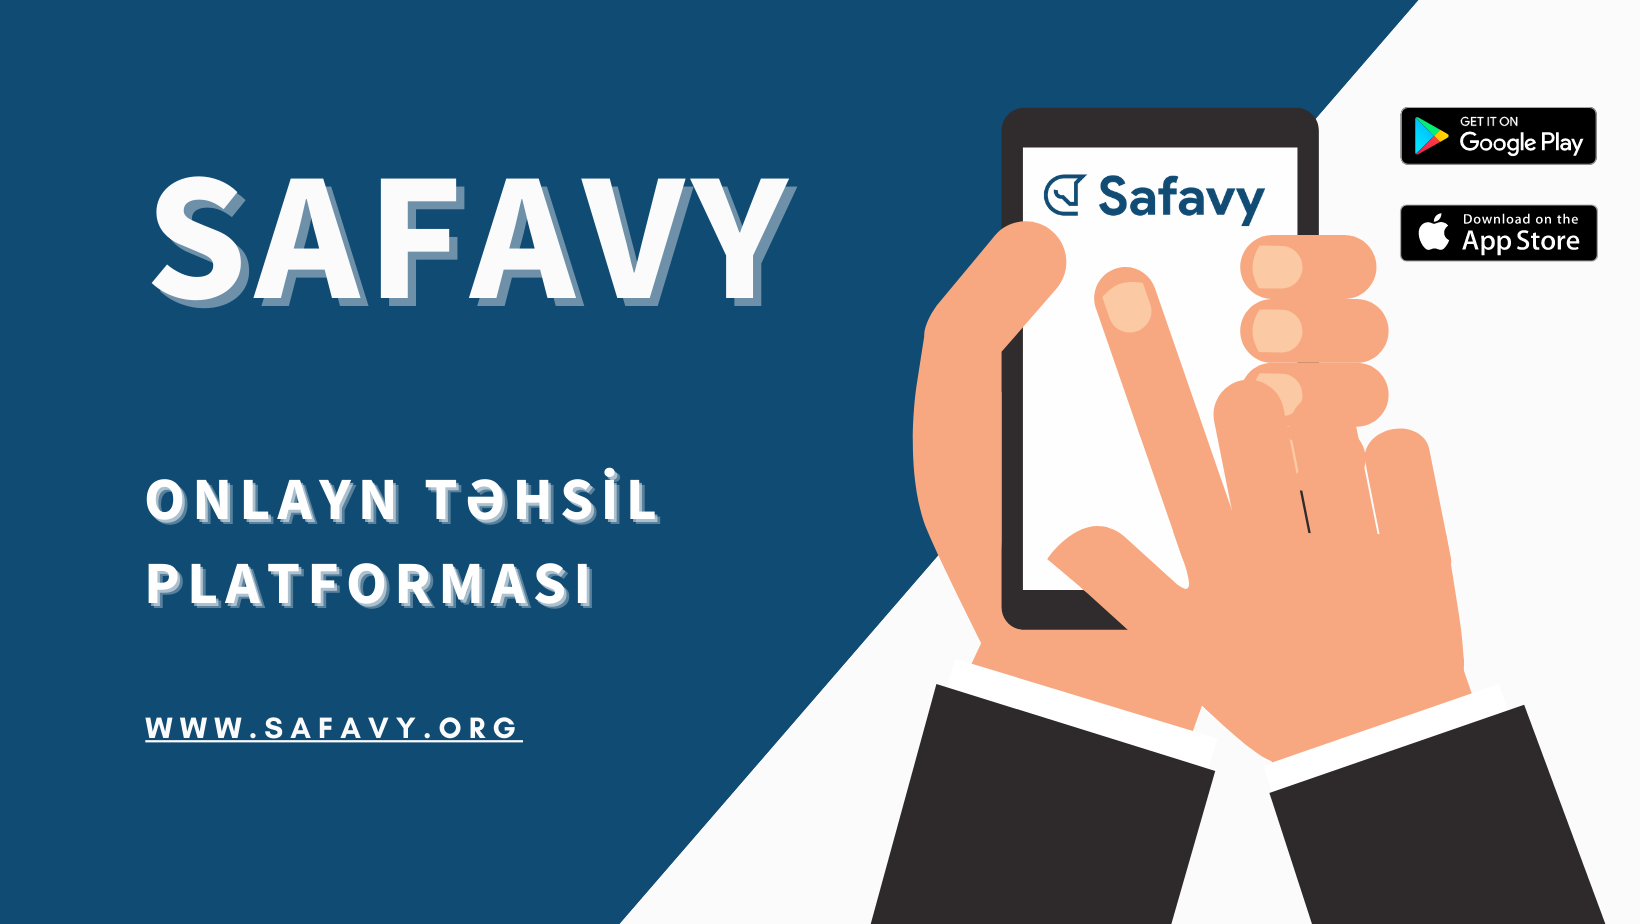 Safavy